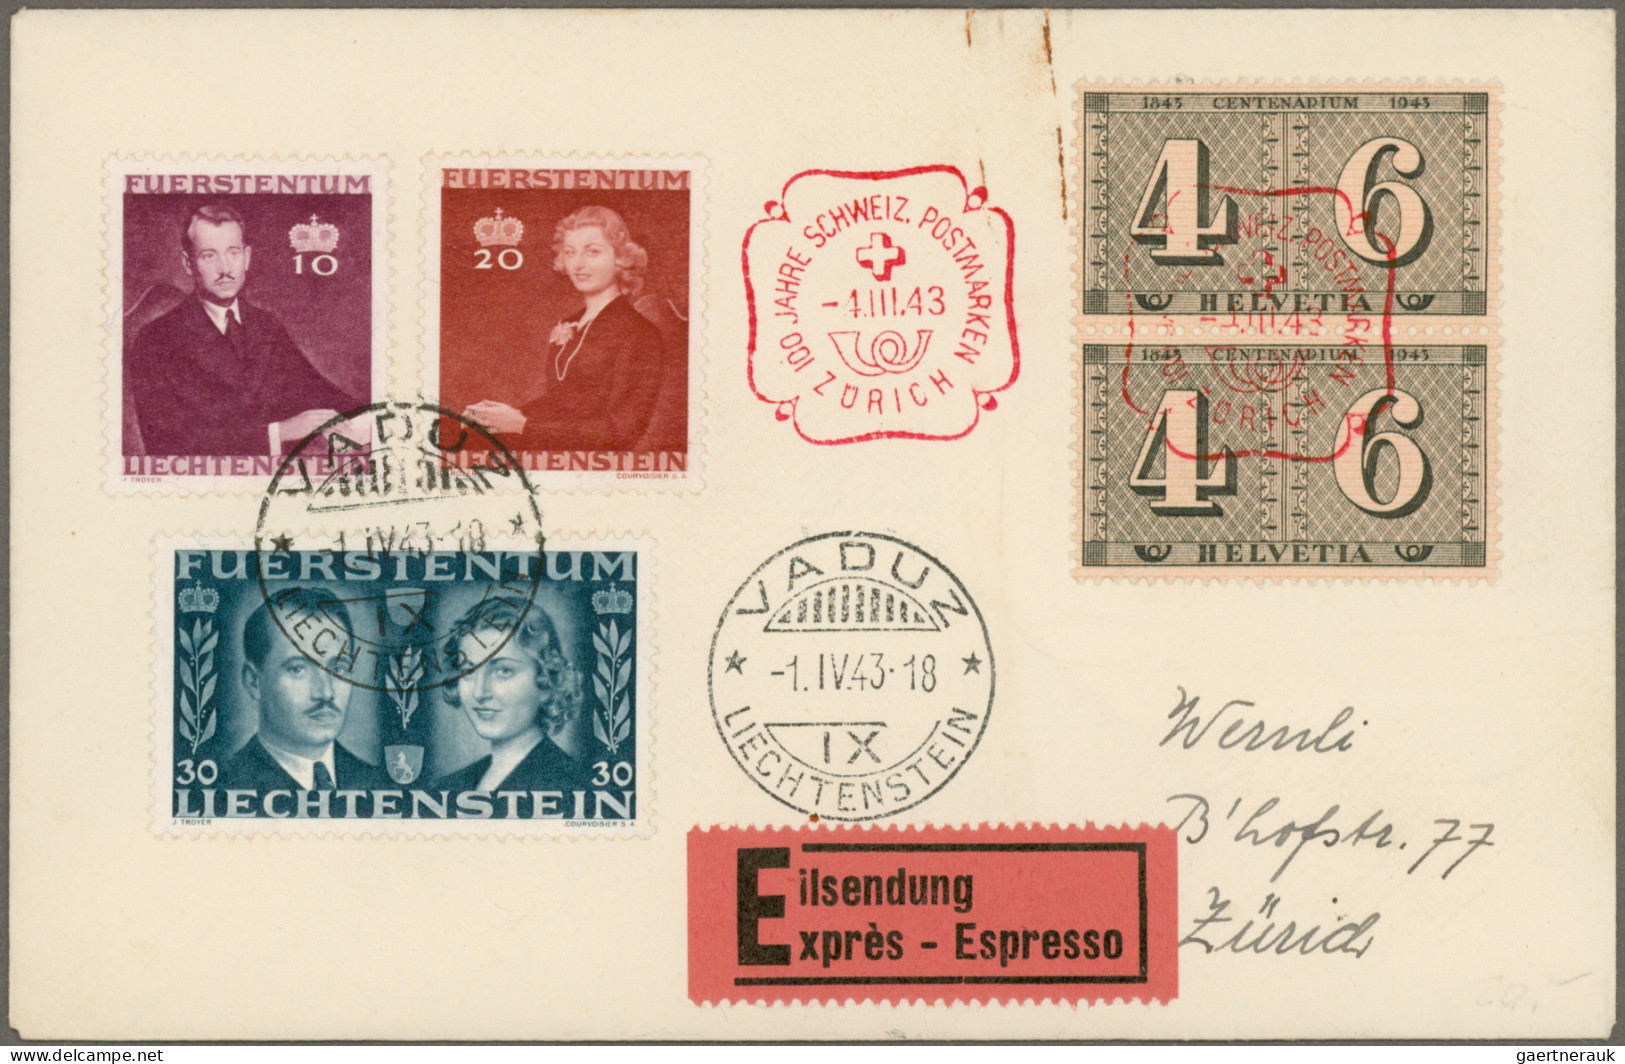 Liechtenstein: 1920/1990 (ca.), Partie von ca. 105 Briefen und Karten, dabei Son